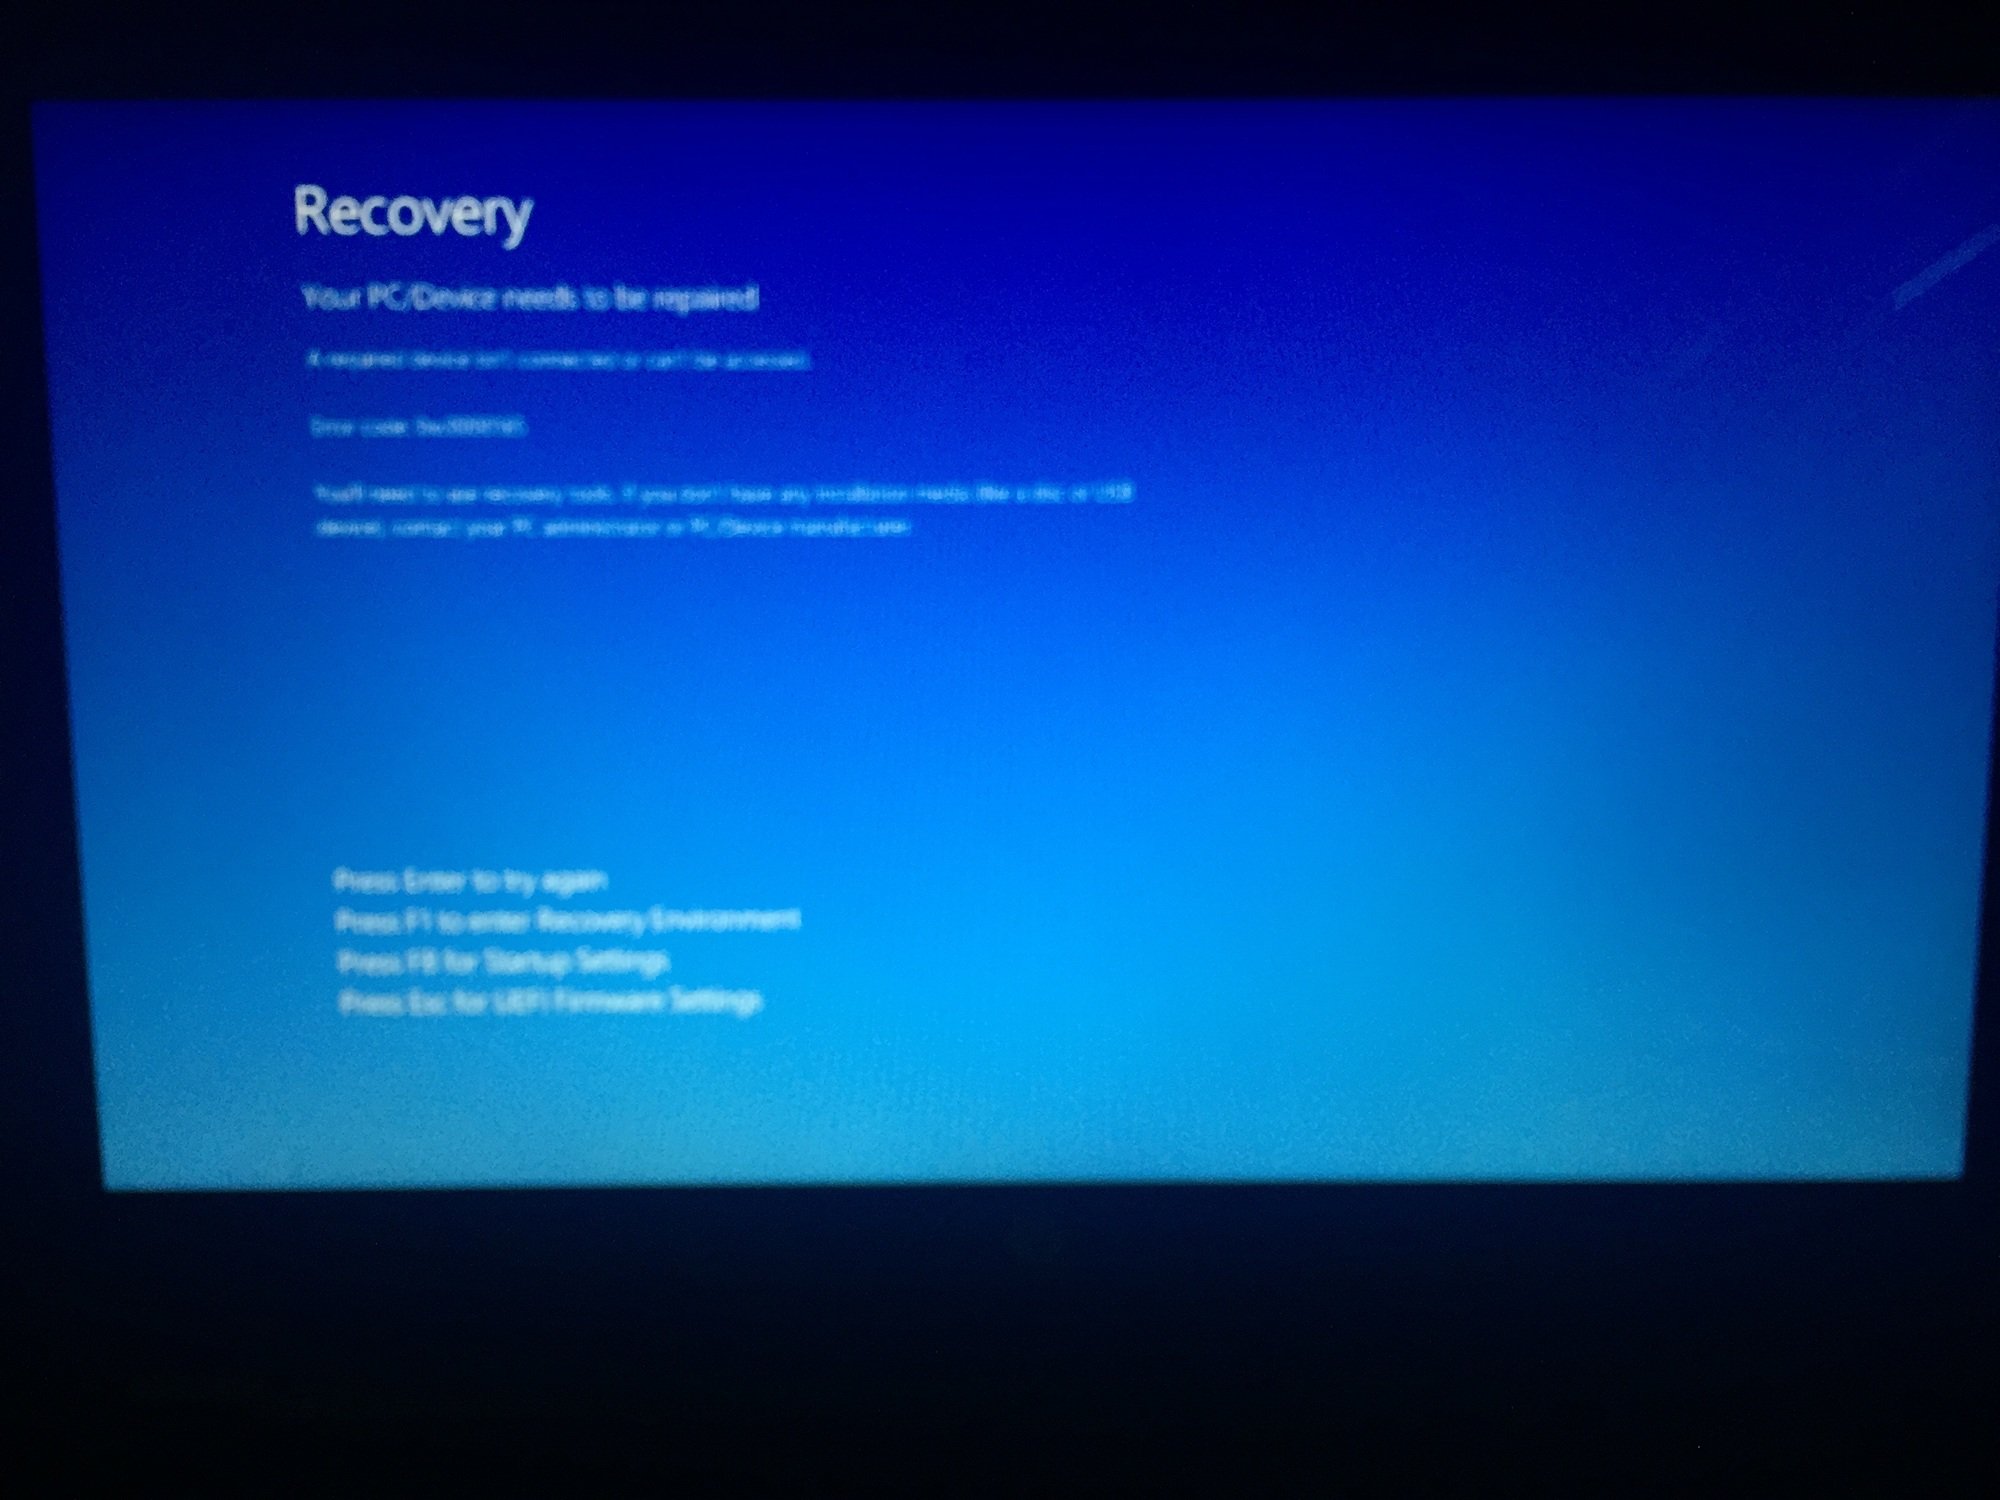 HP Laptop stuck in Recovery Mode 08f66ec1-b5ea-4408-b4fd-0dabd0c4ea29?upload=true.jpg